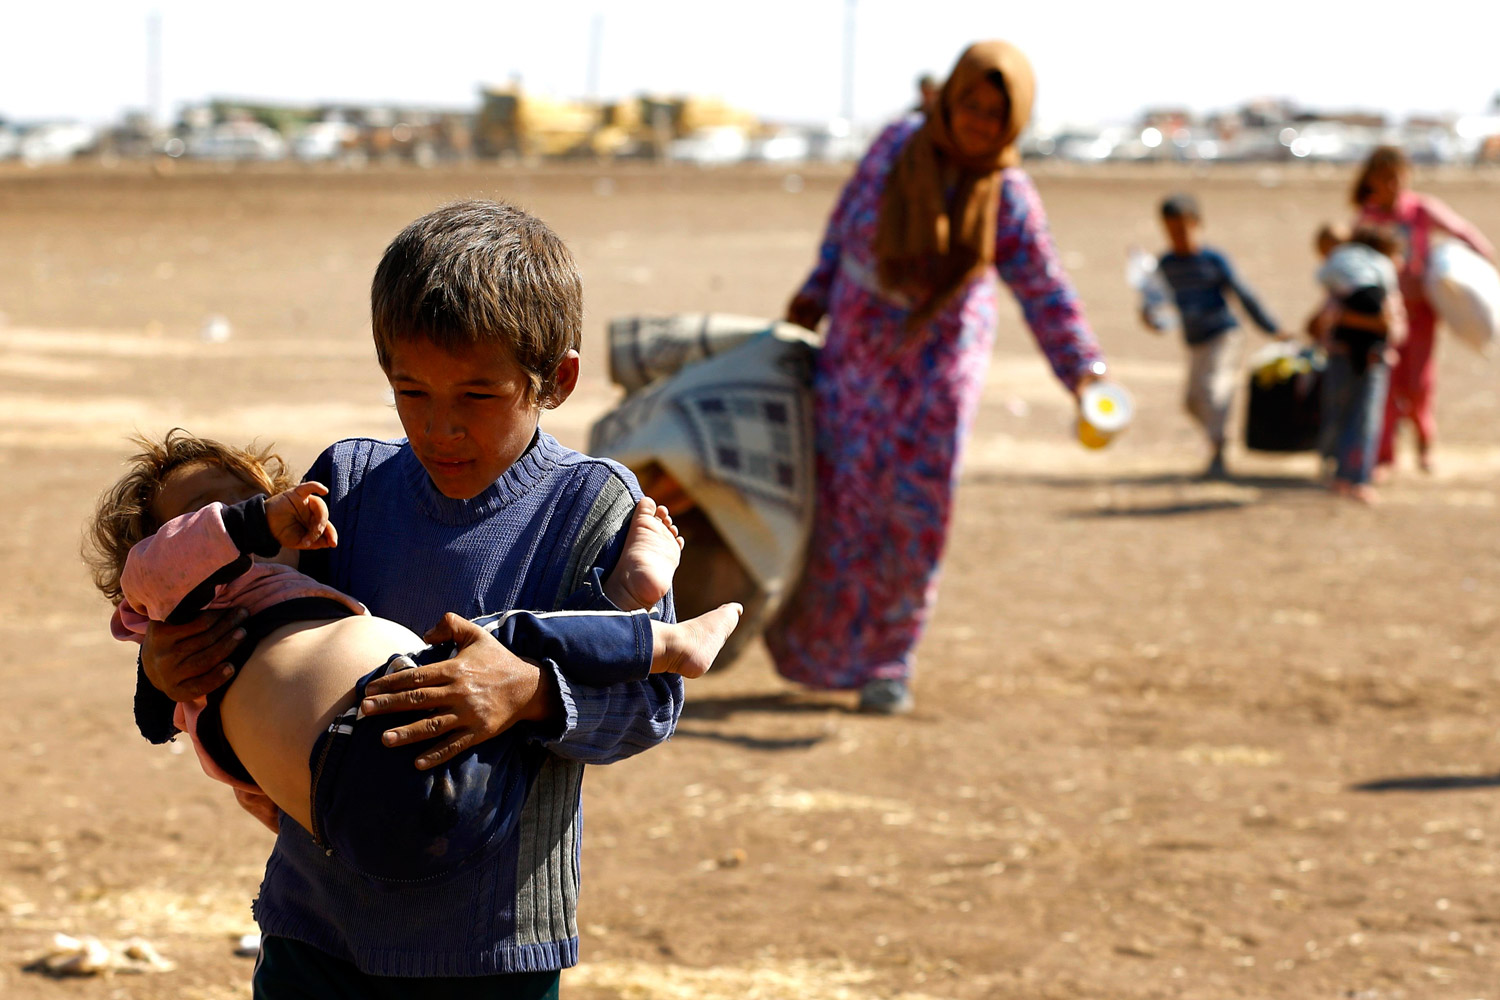 El Estado Islámico provoca un drama humanitario. 200.000 refugiados kurdos escapan de Siria